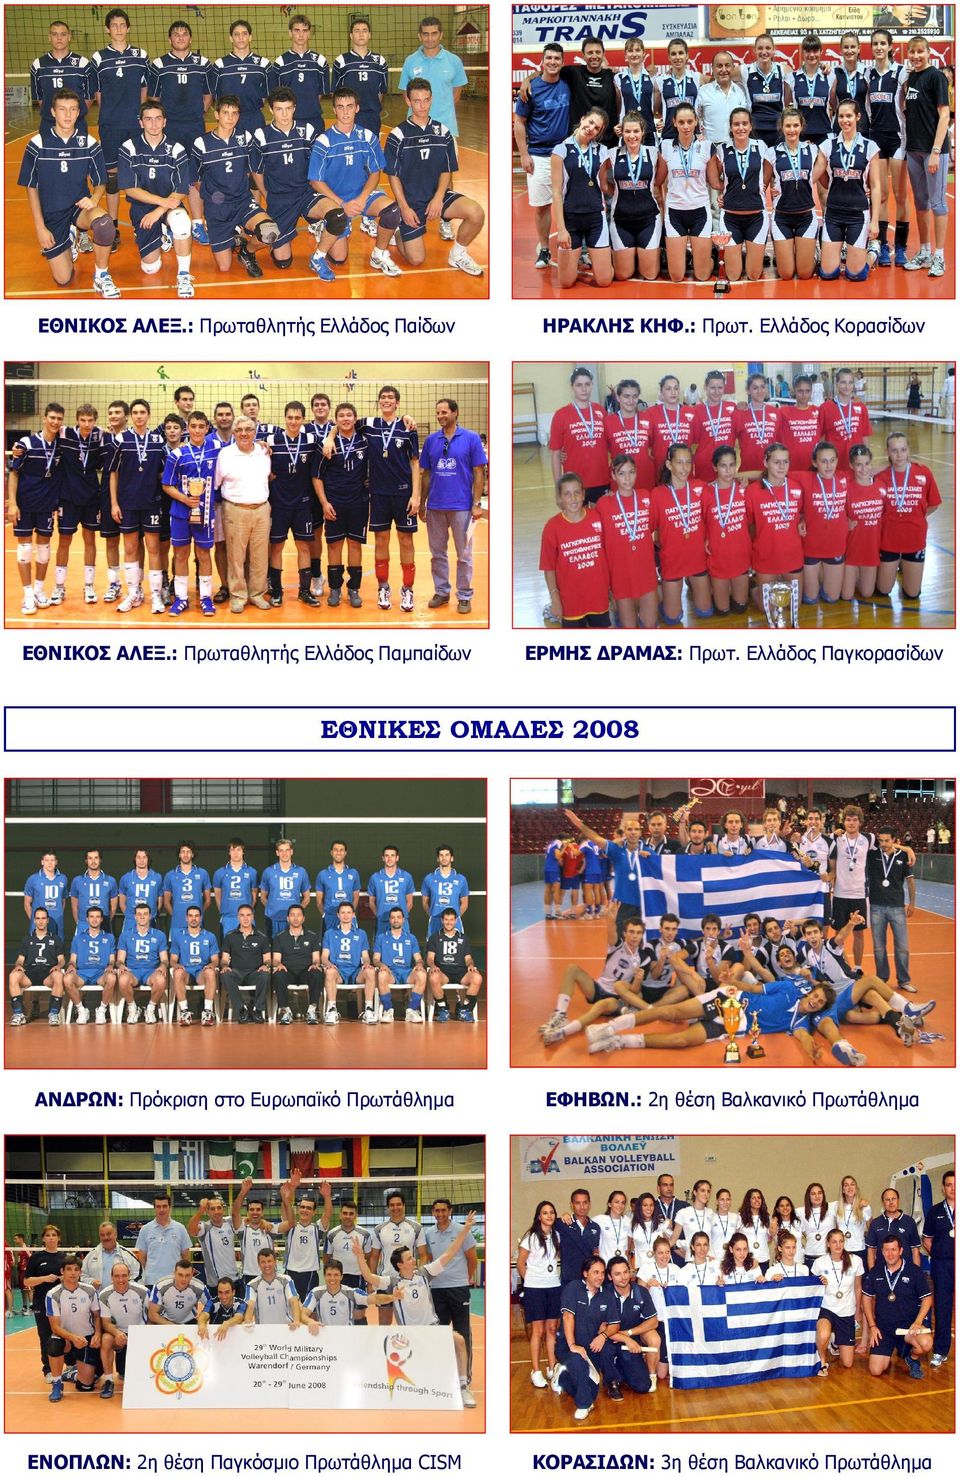 Ελλάδος Παγκορασίδων ΕΘΝΙΚΕΣ ΟΜΑ ΕΣ 2008 ΑΝ ΡΩΝ: Πρόκριση στο Ευρωπαϊκό Πρωτάθληµα